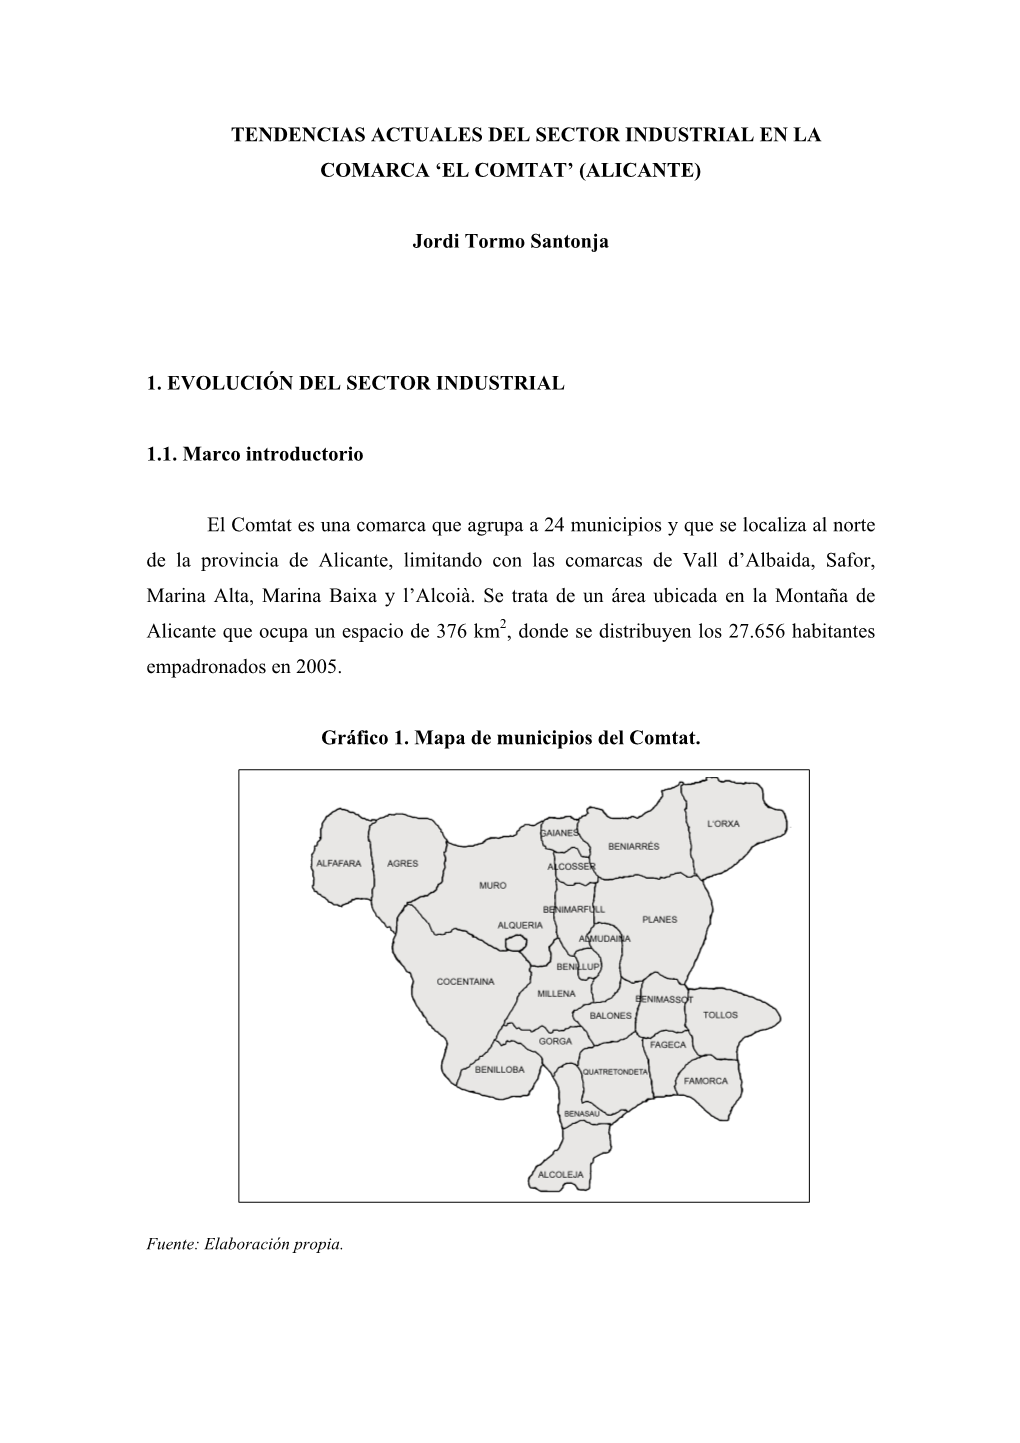 Tendencias Actuales Del Sector Industrial En La Comarca ‘El Comtat’ (Alicante)